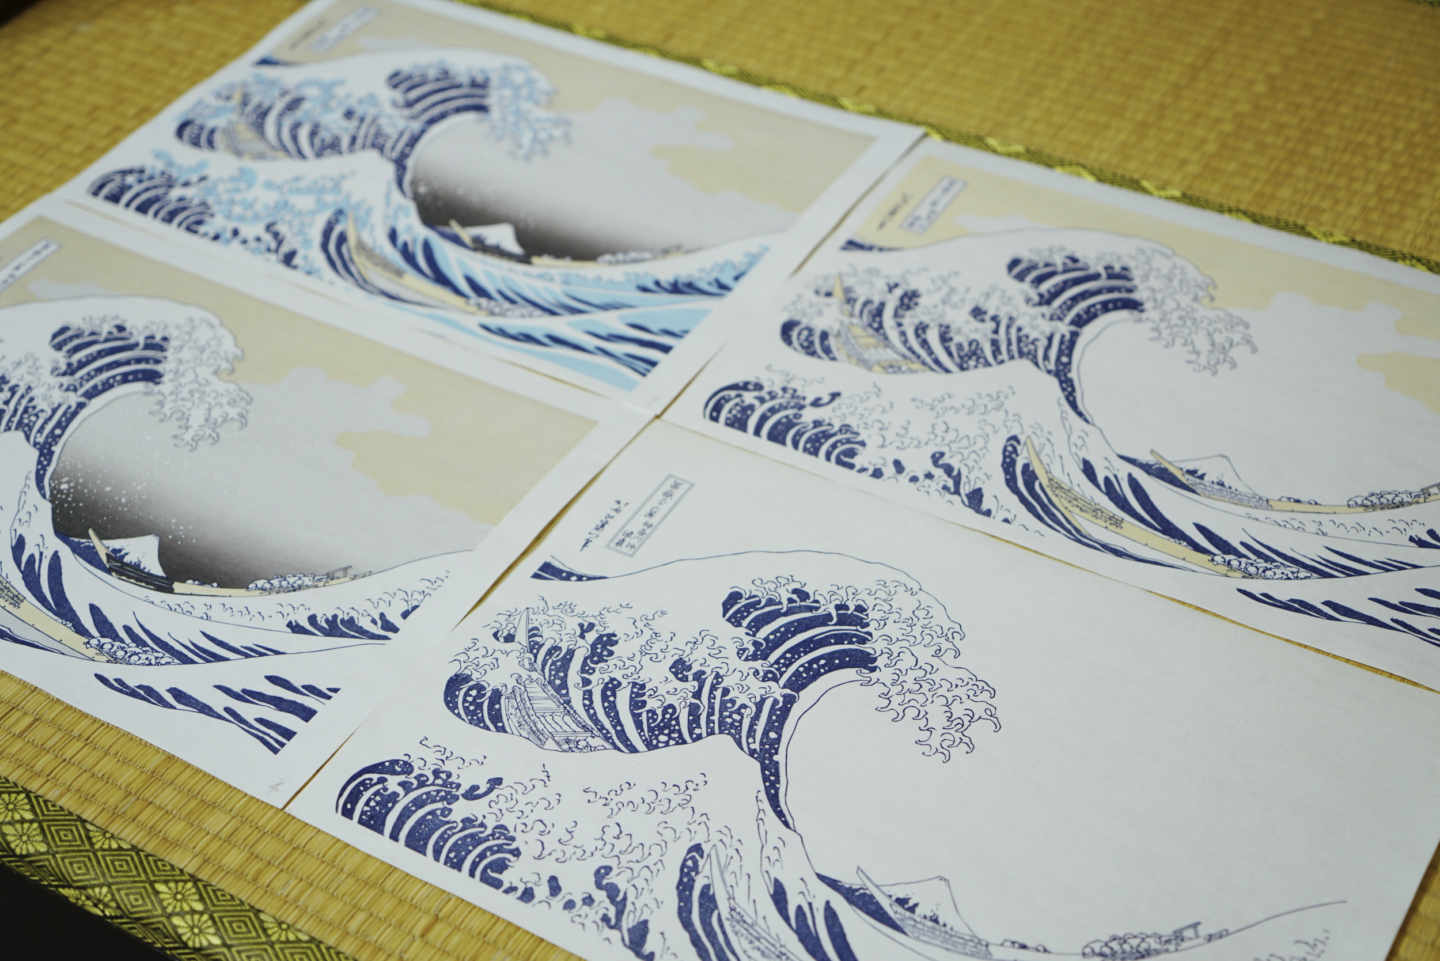 日本の印刷技術のルーツでもある“江戸木版画”の文化を、今でも当時と変わらぬ製法で継承し続ける「高橋工房」。世界を虜にする江戸木版画の魅力とは一体なんなのだろうか